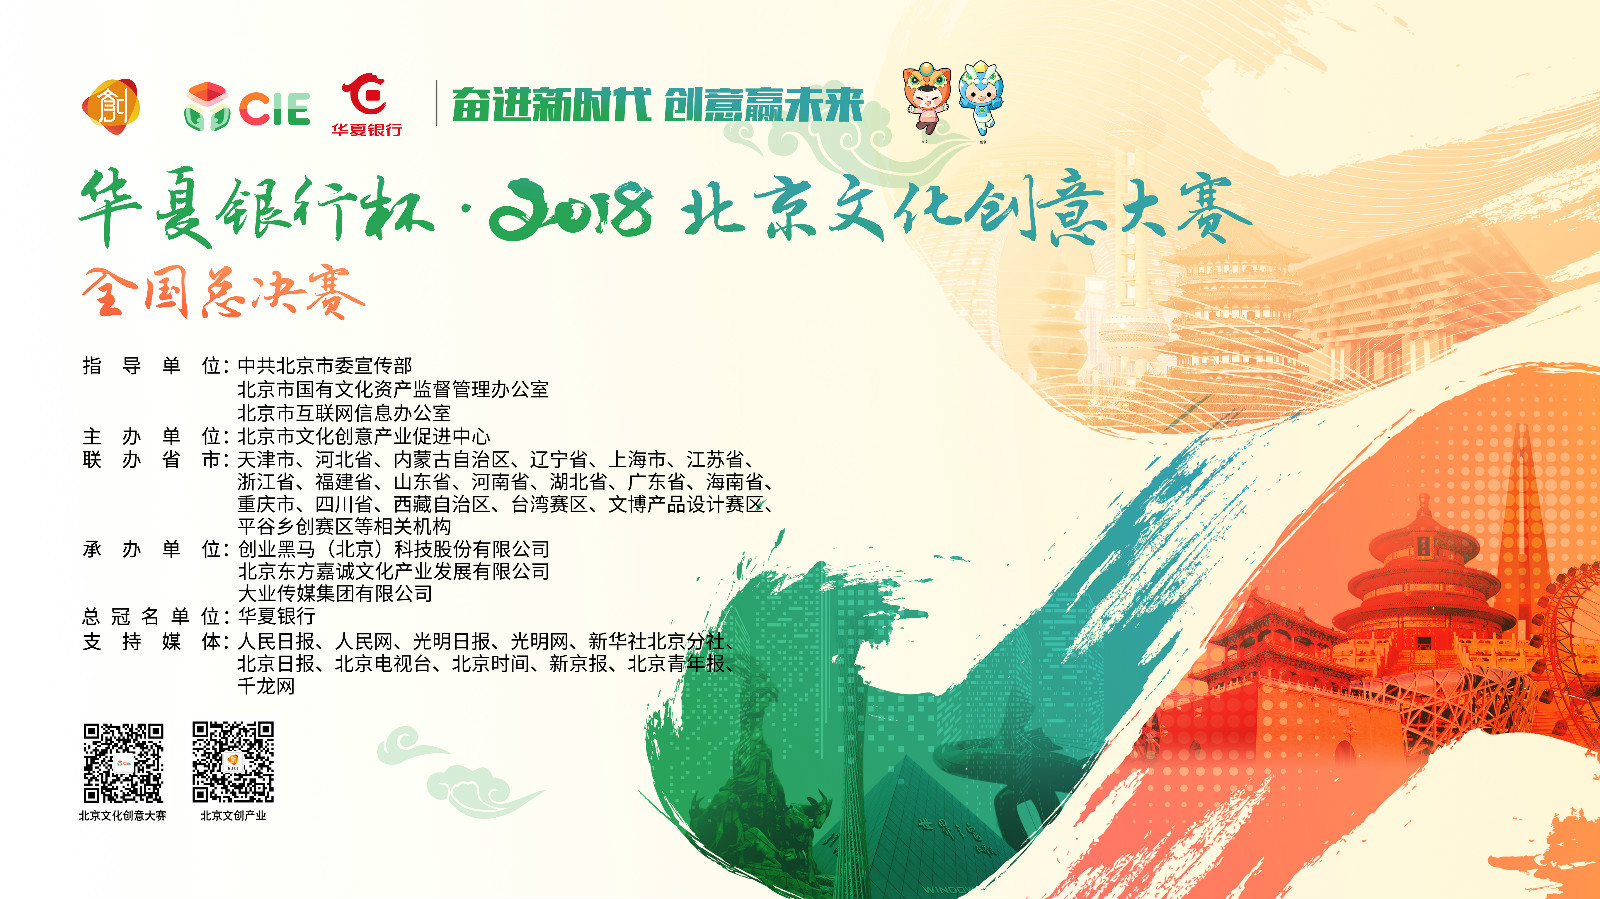 华夏银行杯2018北京文化创意大赛总决赛-创意类1